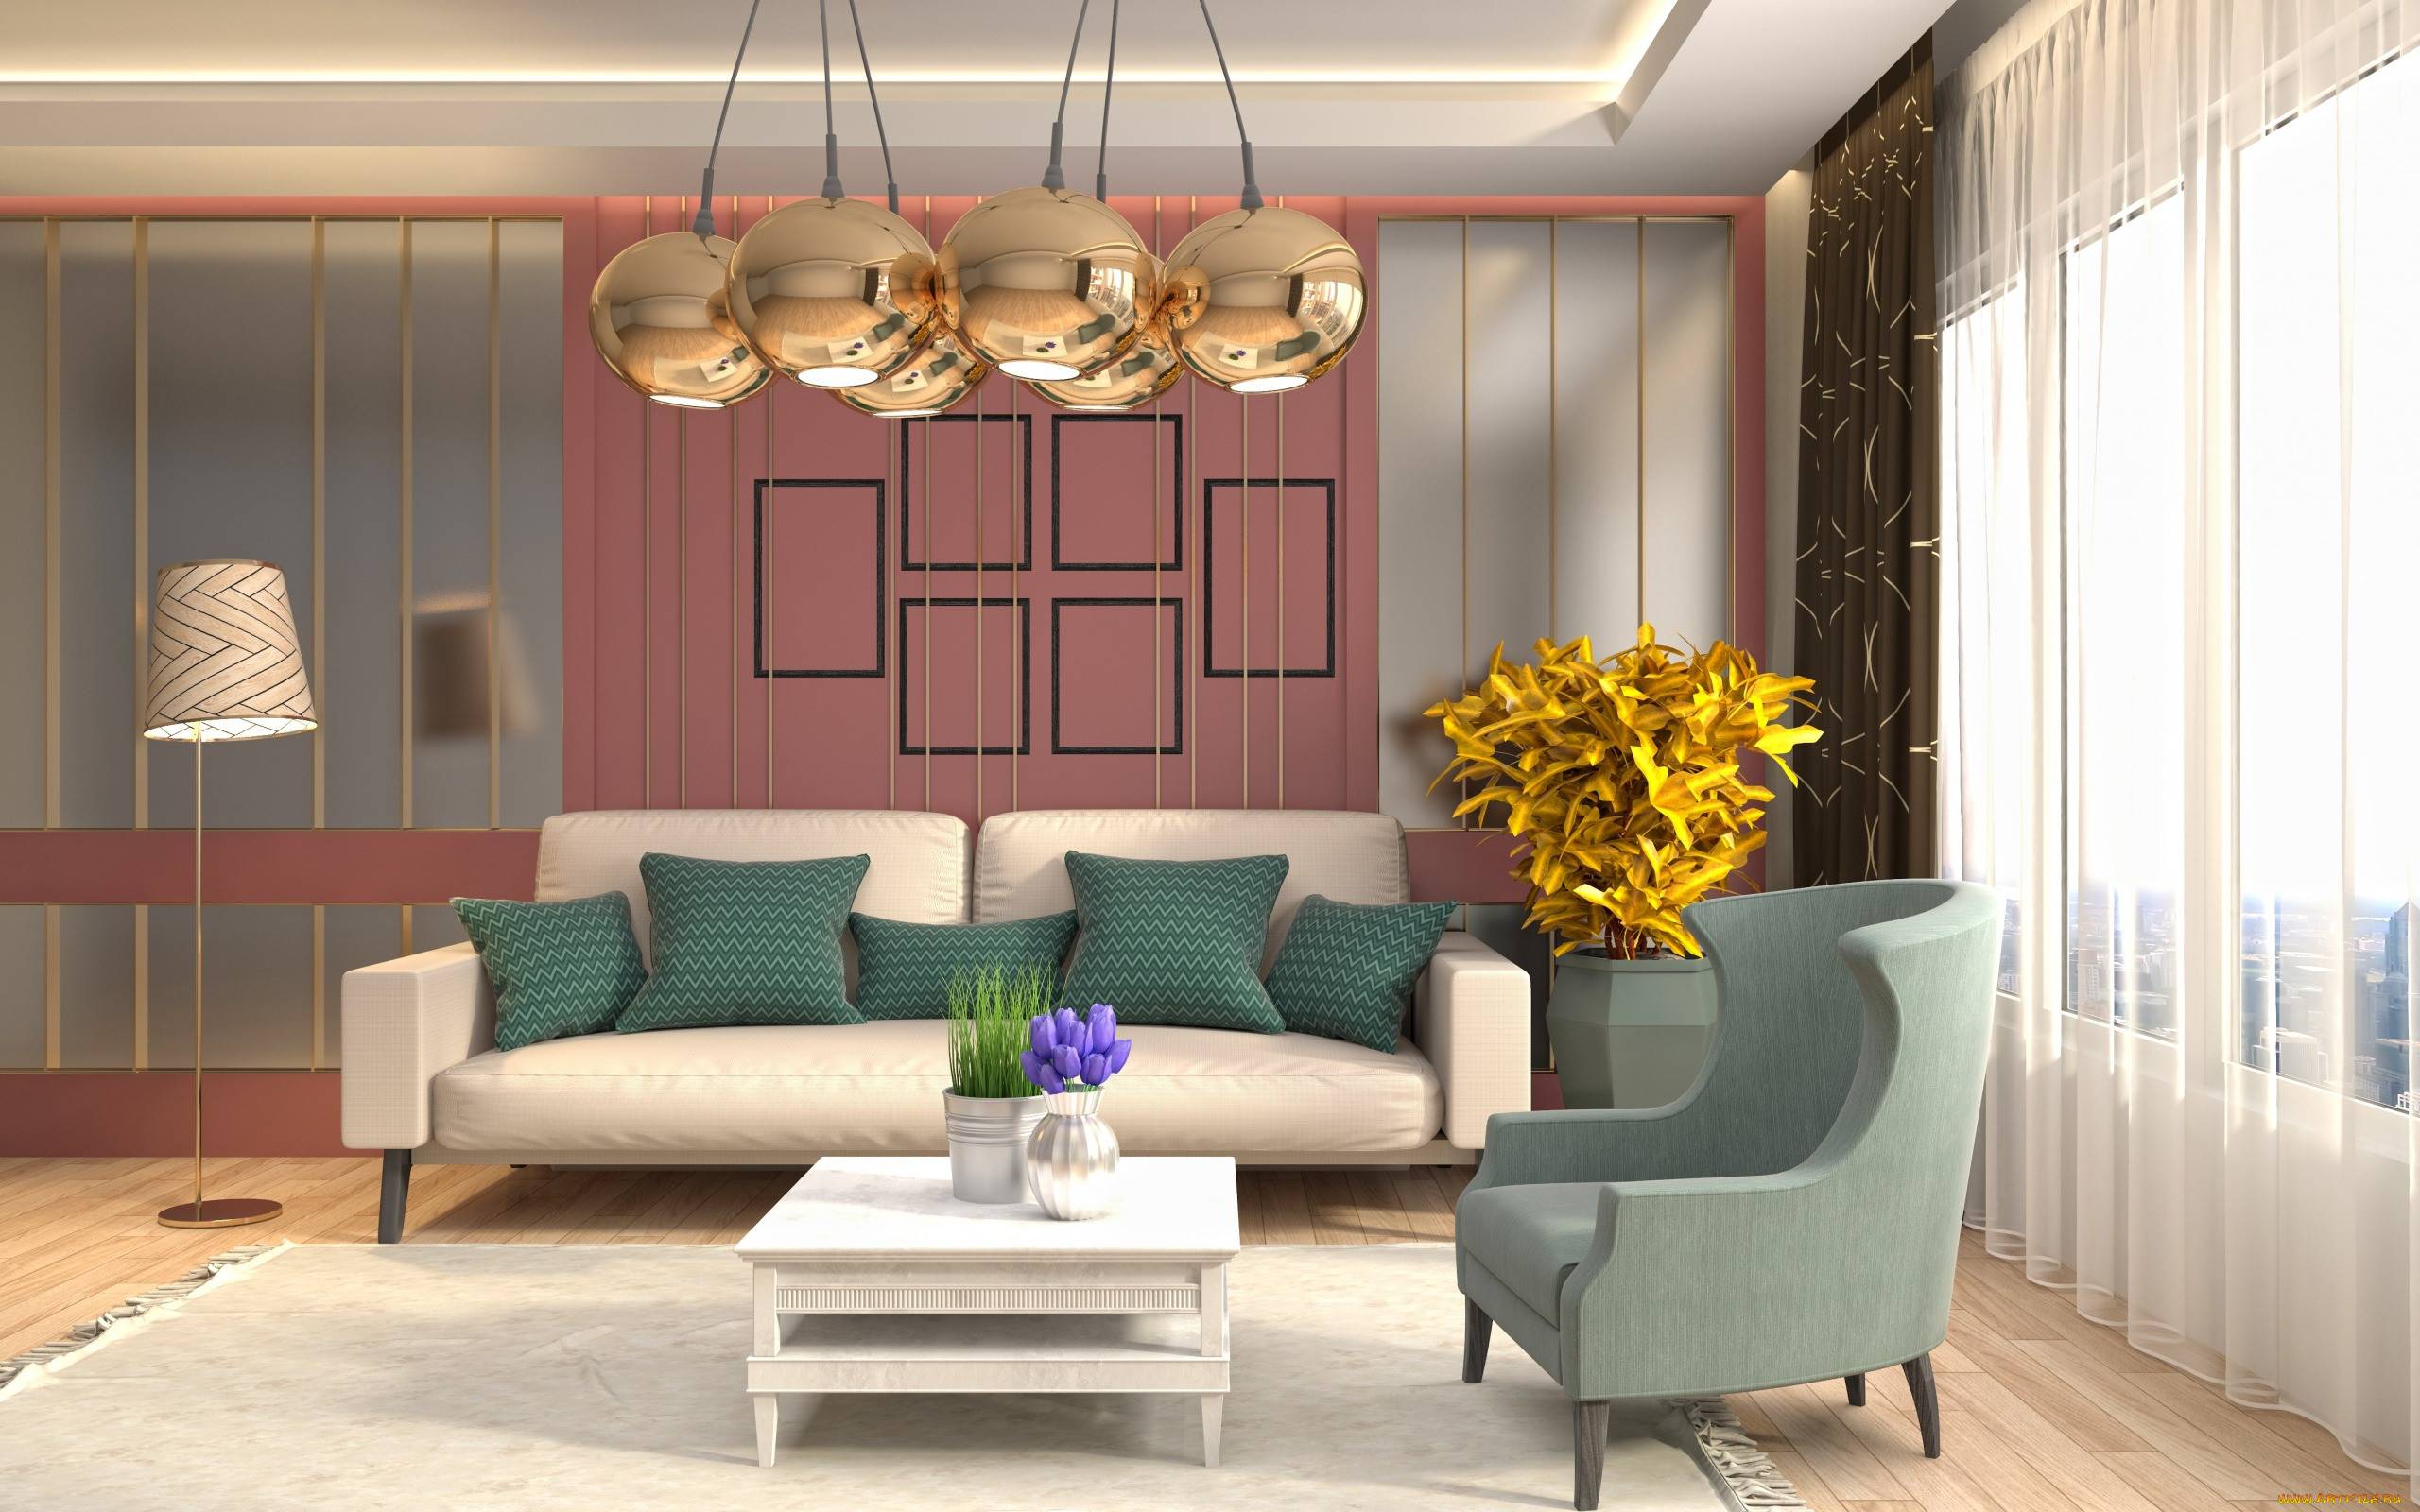 Ретро обои для стен: как оформить в винтажном стилистическом направлении комнату, кухню или коридор, какие качества стоит учитывать и какой цвет подбирать для мебели